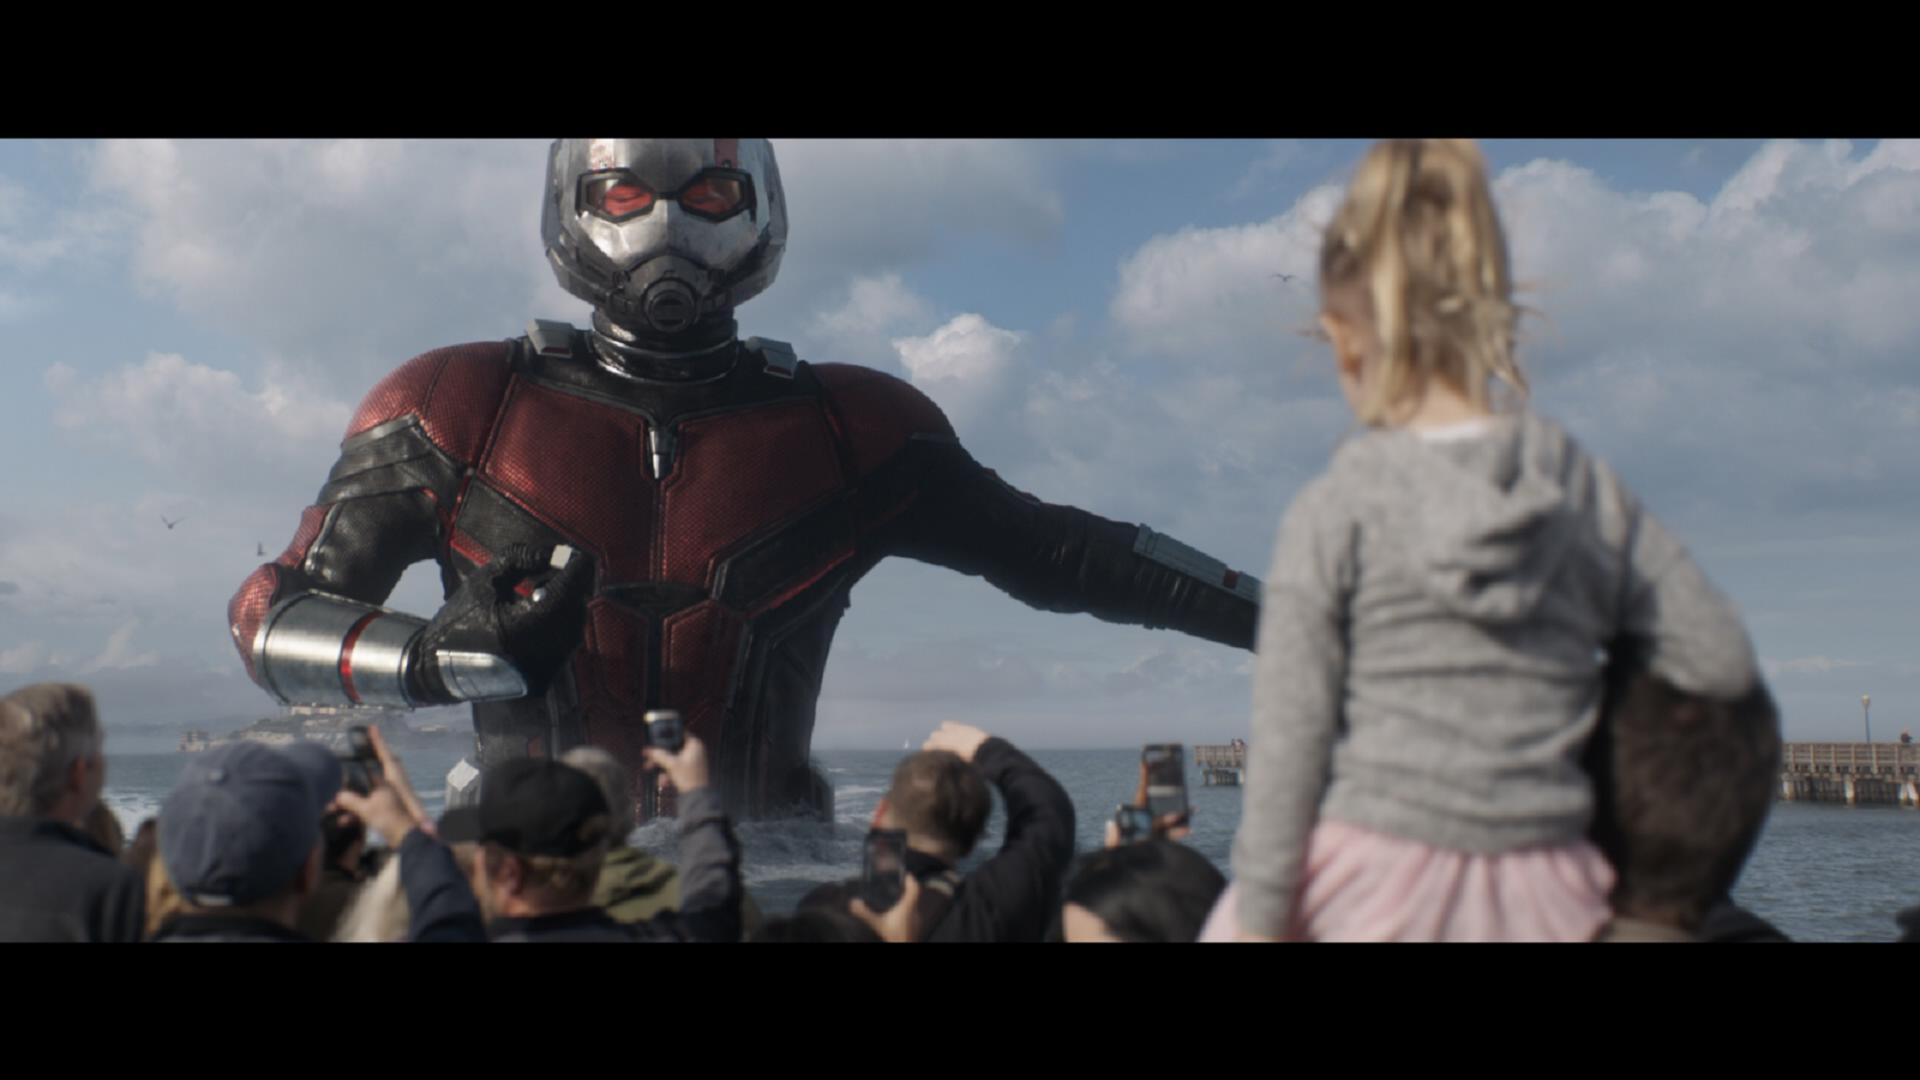 [蚁人2].Ant-Man.and.the.Wasp.2018.3D.BluRay.1080p.AVC.DTS-HD.MA.7.1-FGT  37.28GB-10.jpg